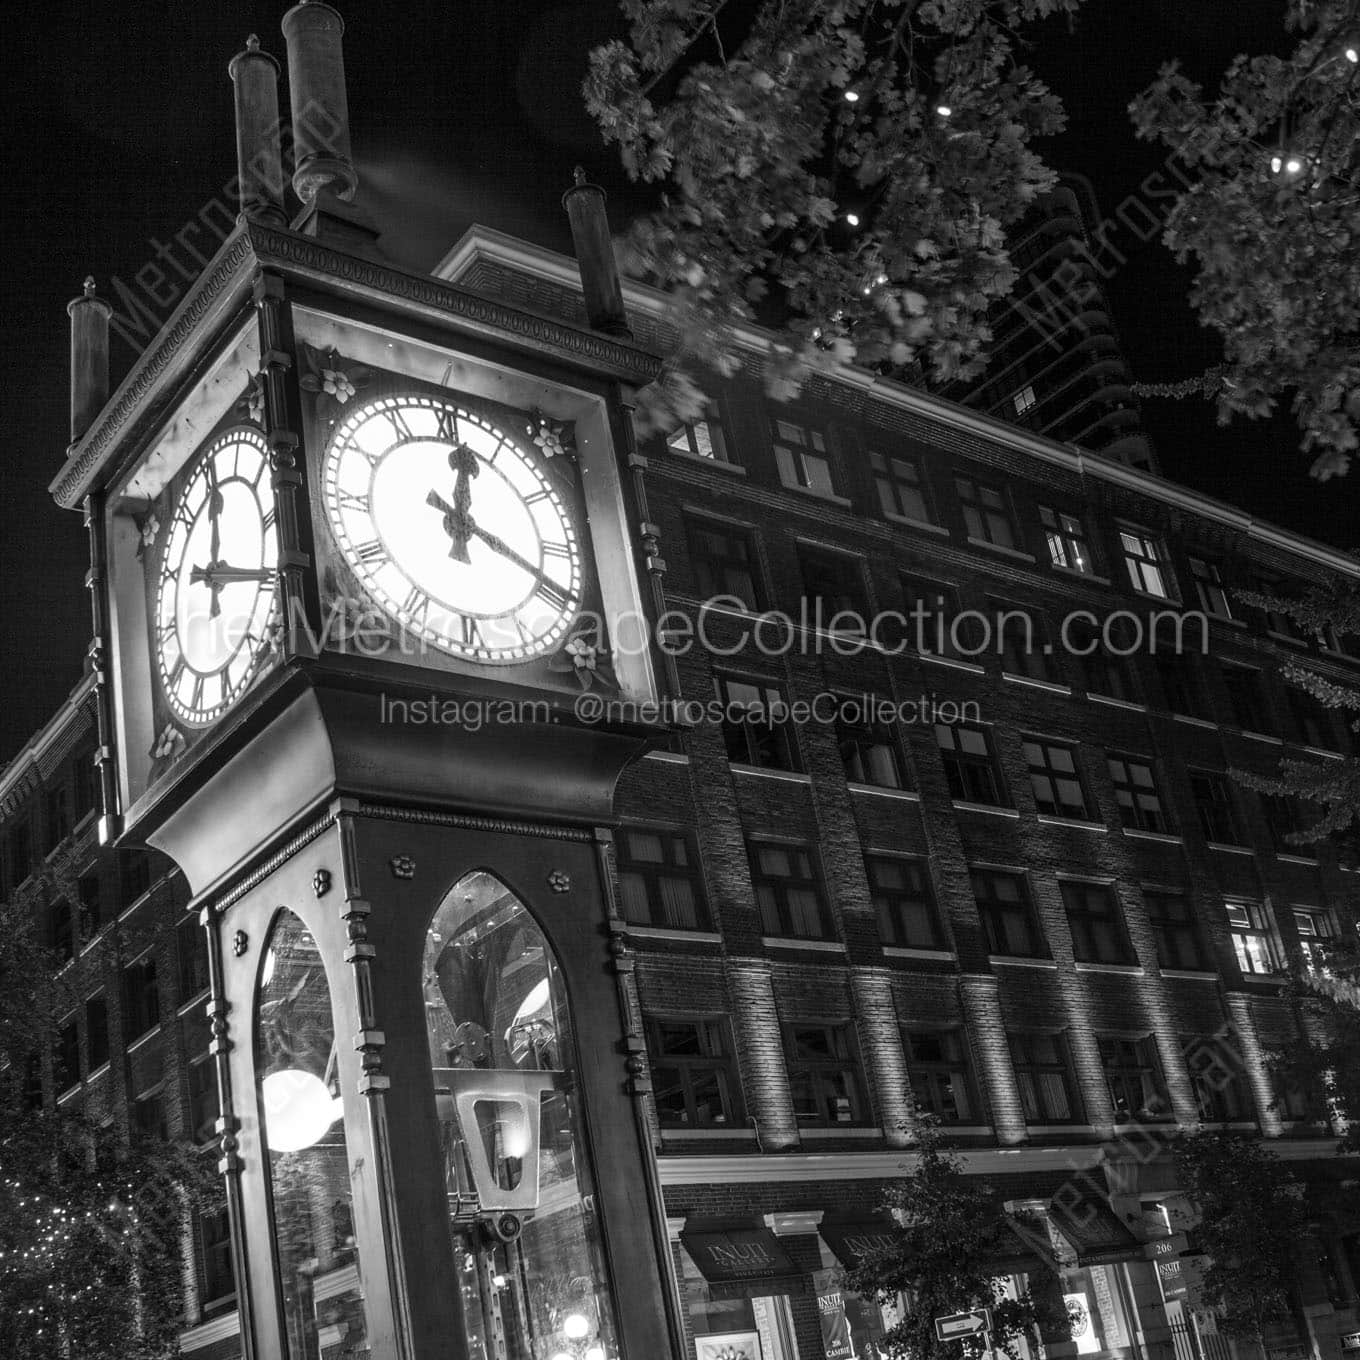 gastown steam clock at night Black & White Office Art